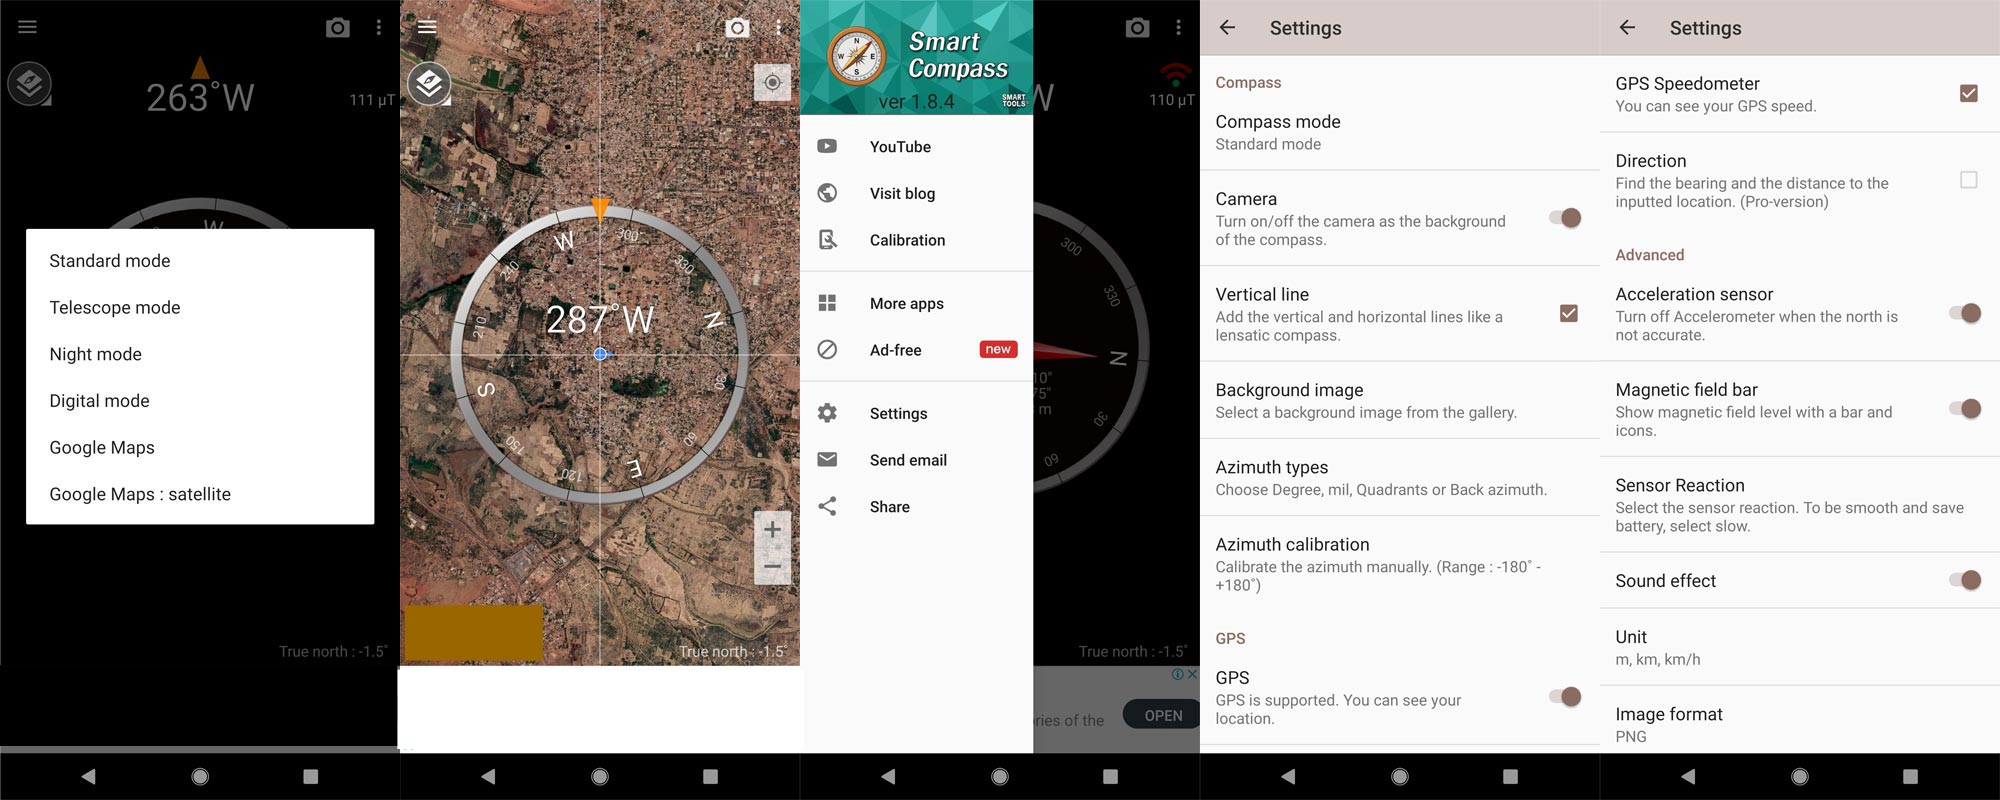 Smart Compass App Screenshots